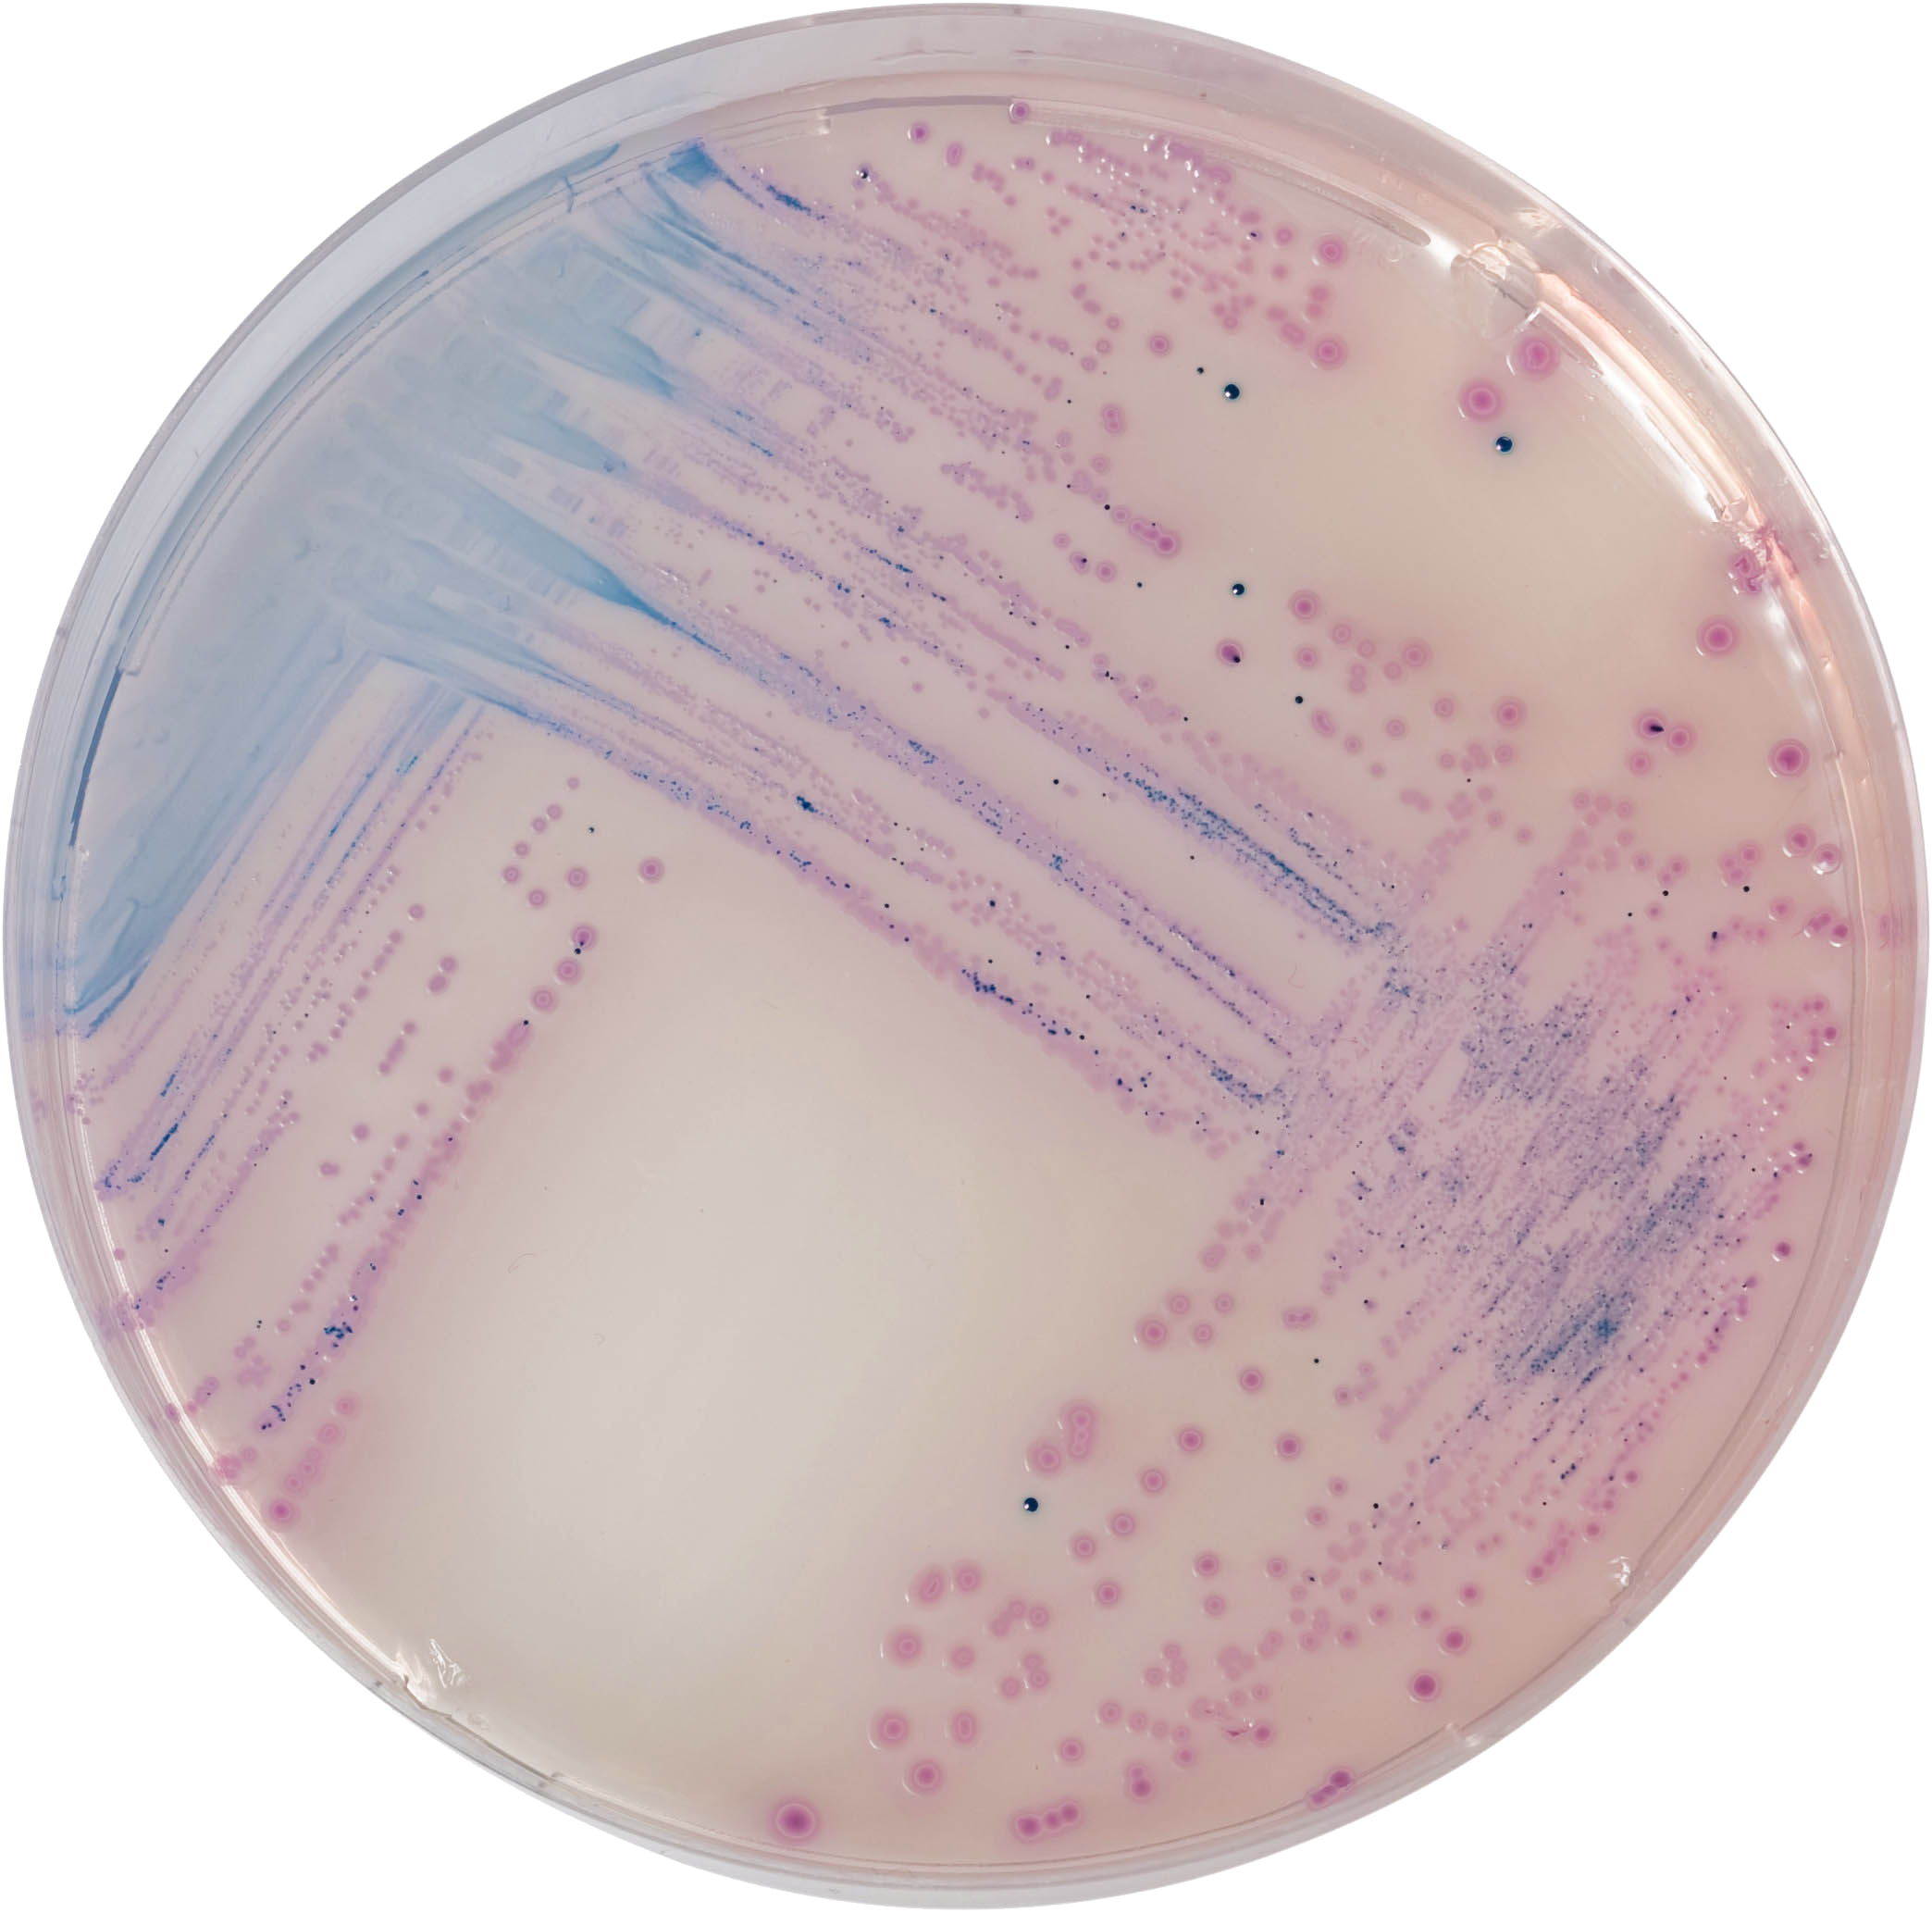 沙门氏菌显微图片